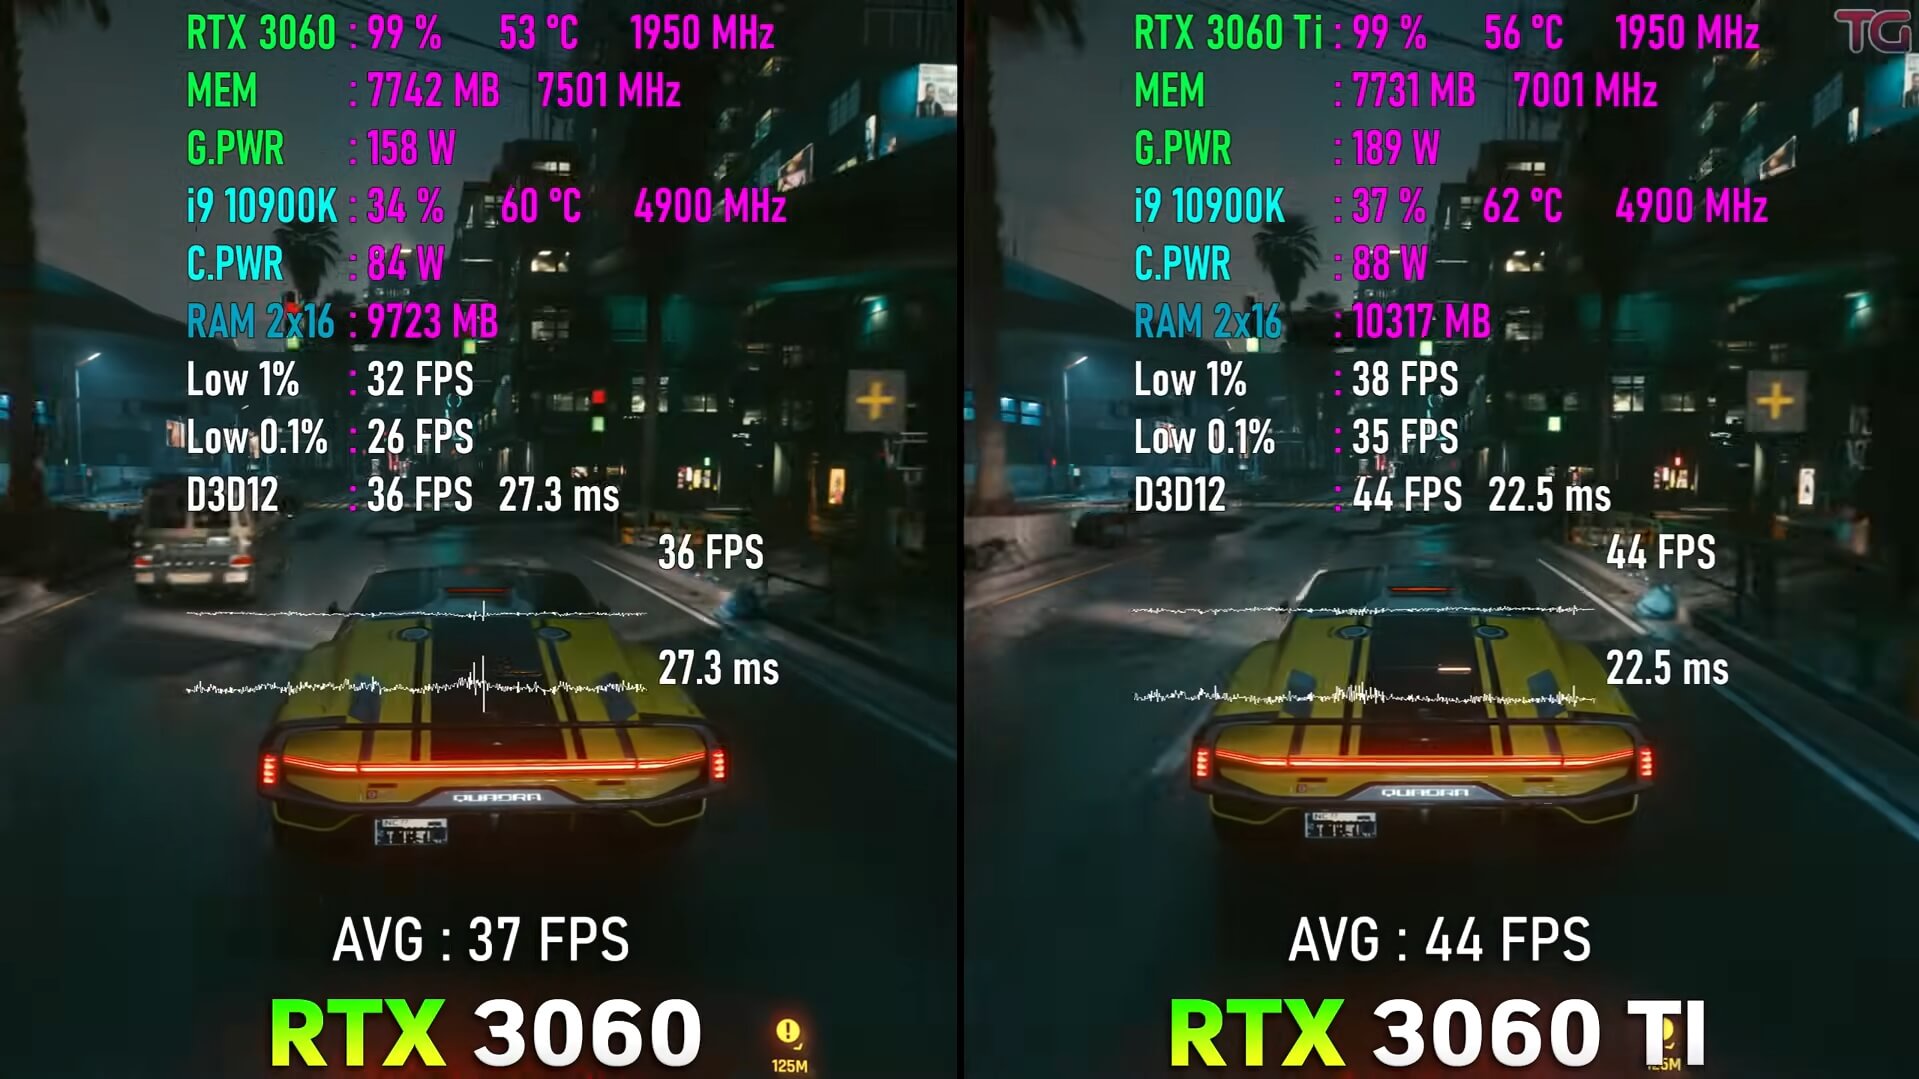 RTX 3060 Vs. RTX 3060 Ti comparision on Cyberpunk 2077